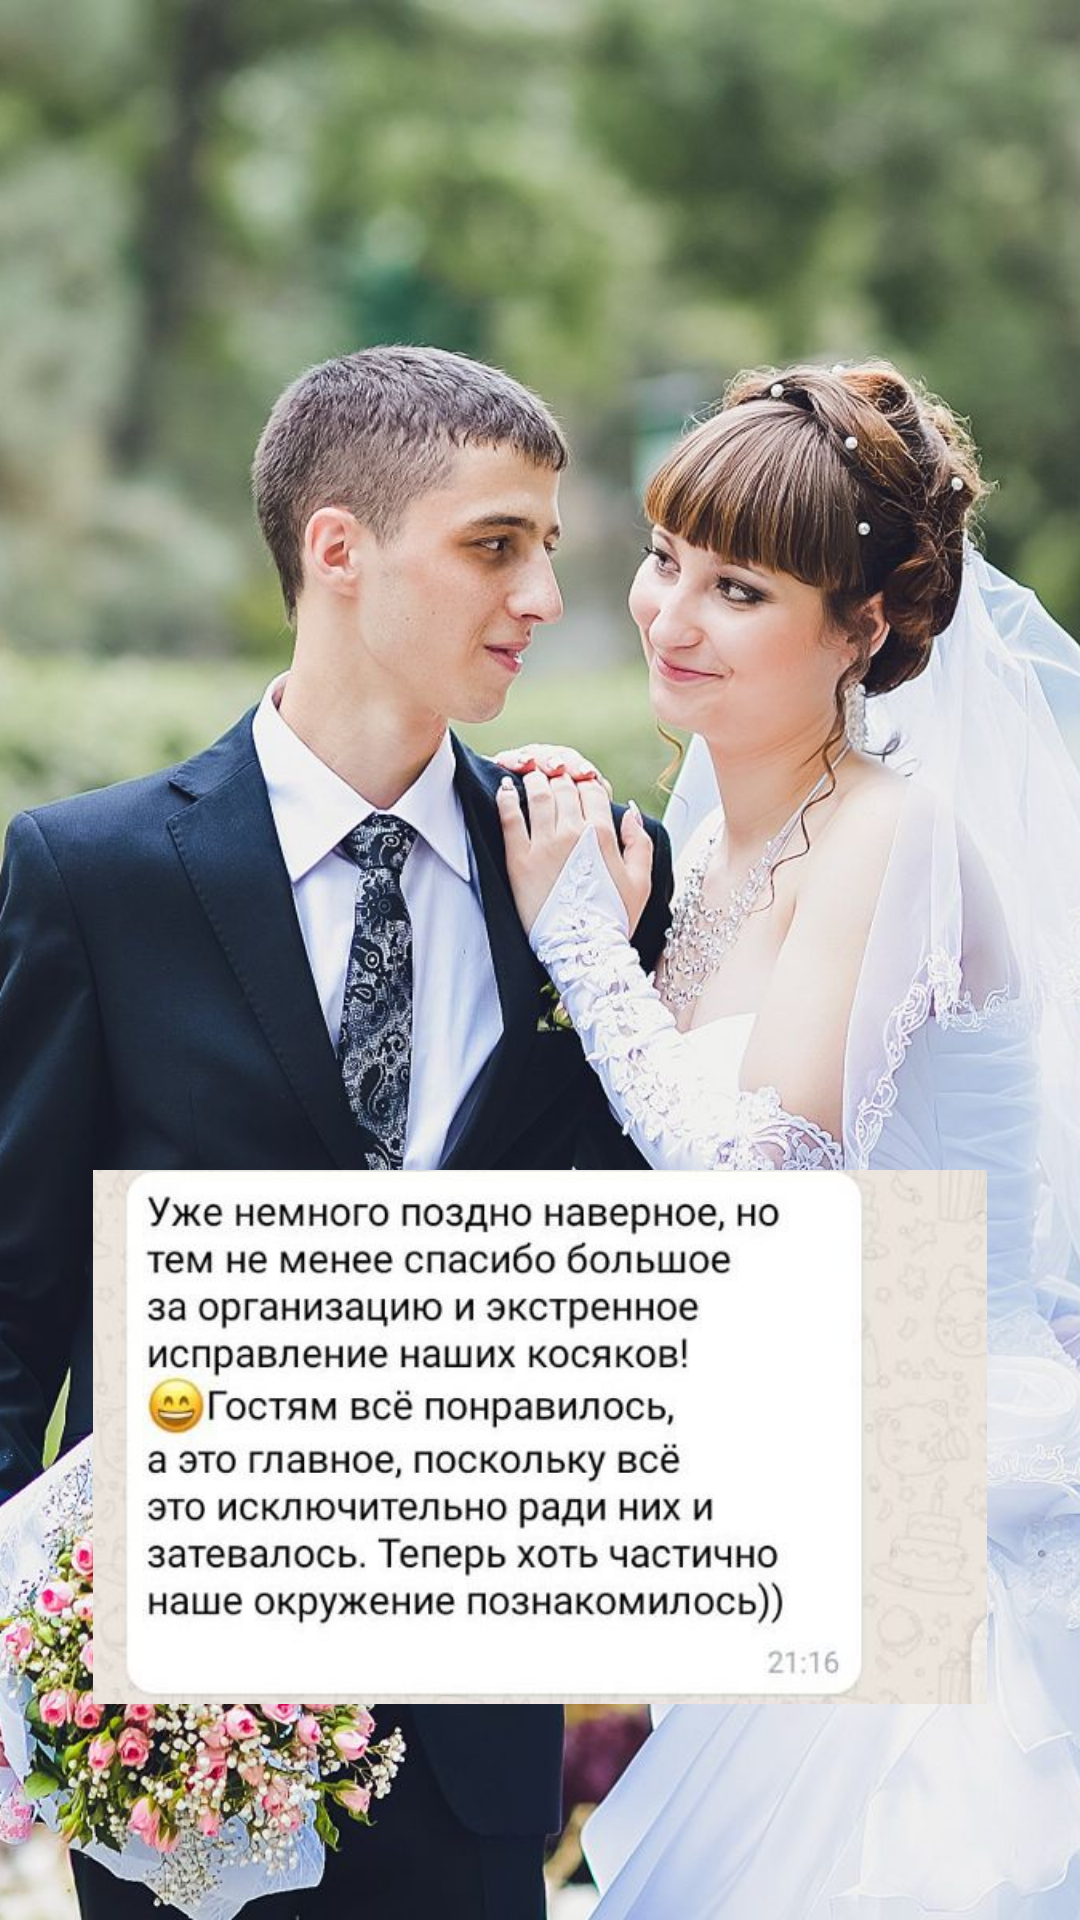 Организация свадьбы во Владивостоке
от компании Pandaevent